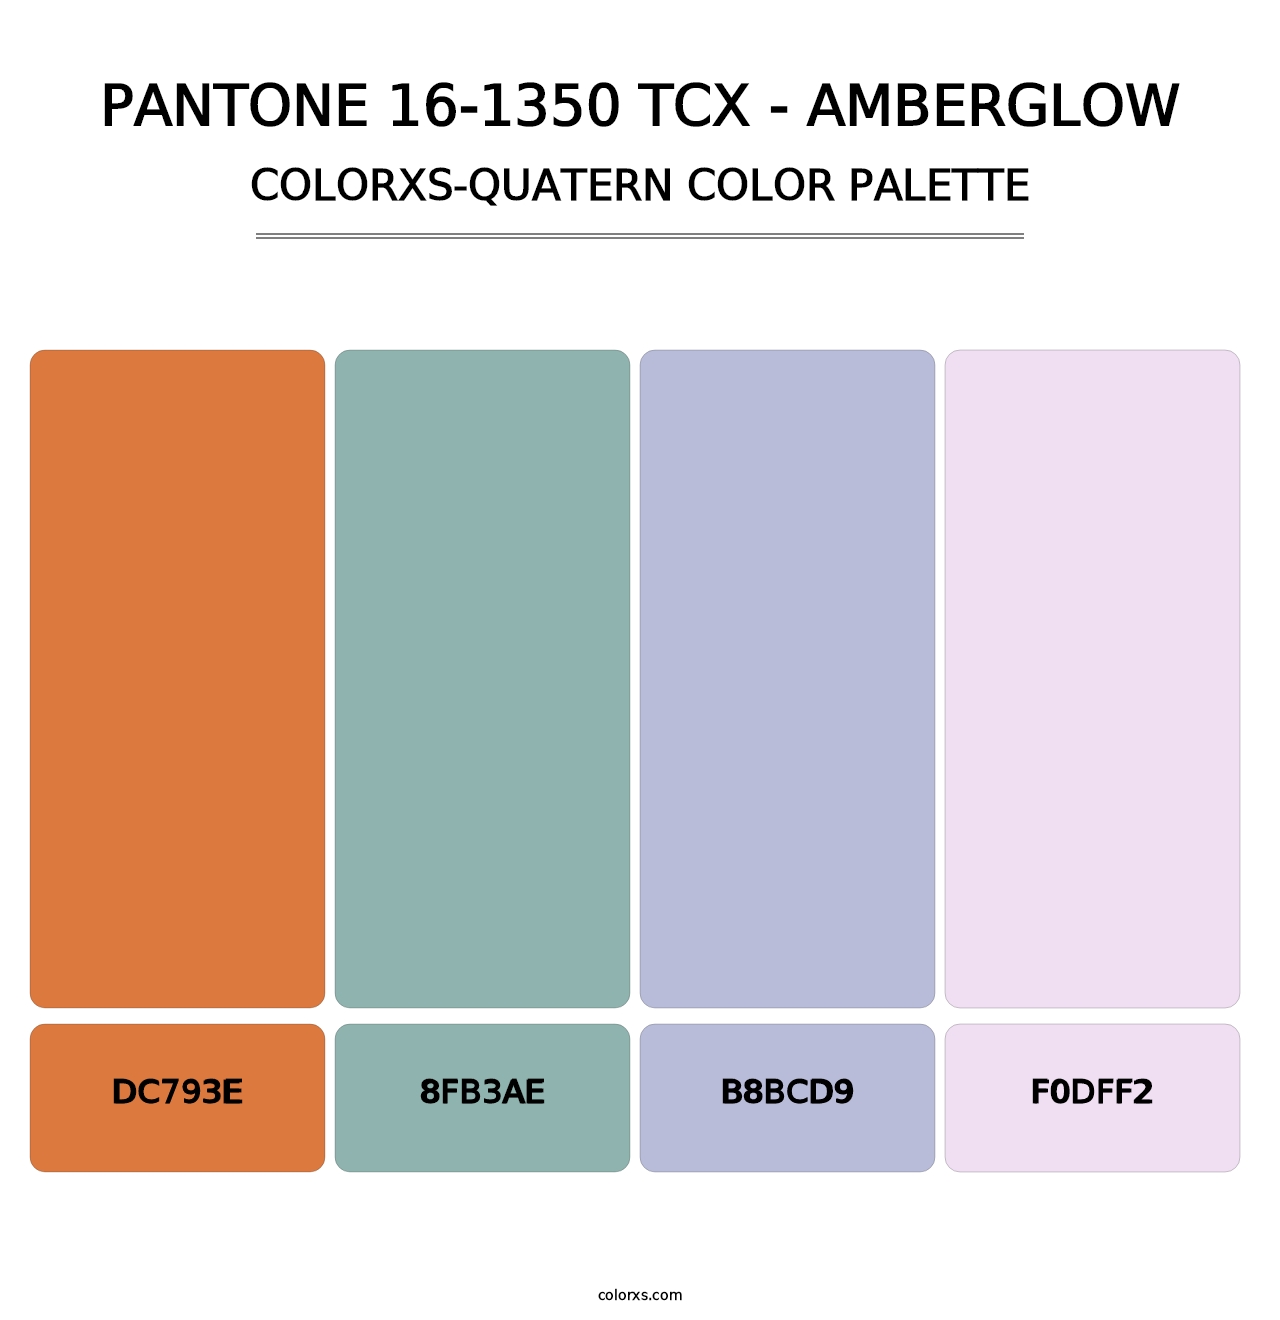 PANTONE 16-1350 TCX - Amberglow - Colorxs Quatern Palette